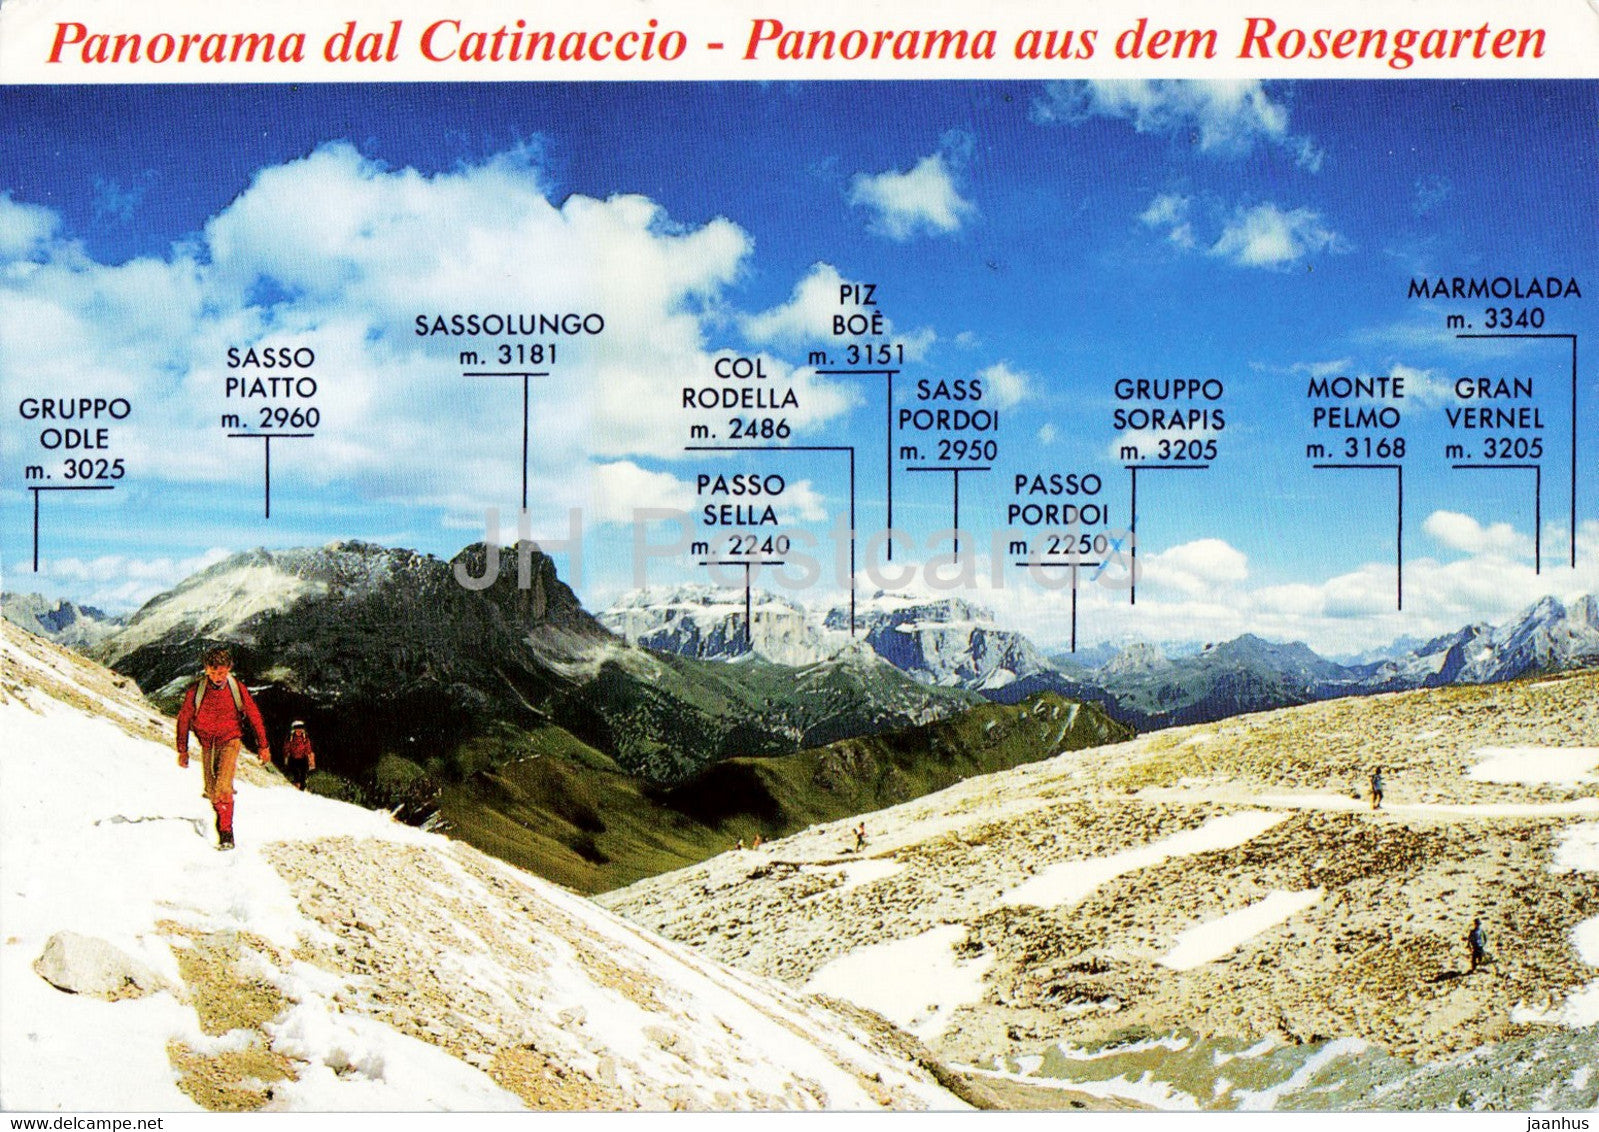 Panorama dal Catinaccio - Panorama aus dem Rosengarten - 1992 - Italy - used - JH Postcards